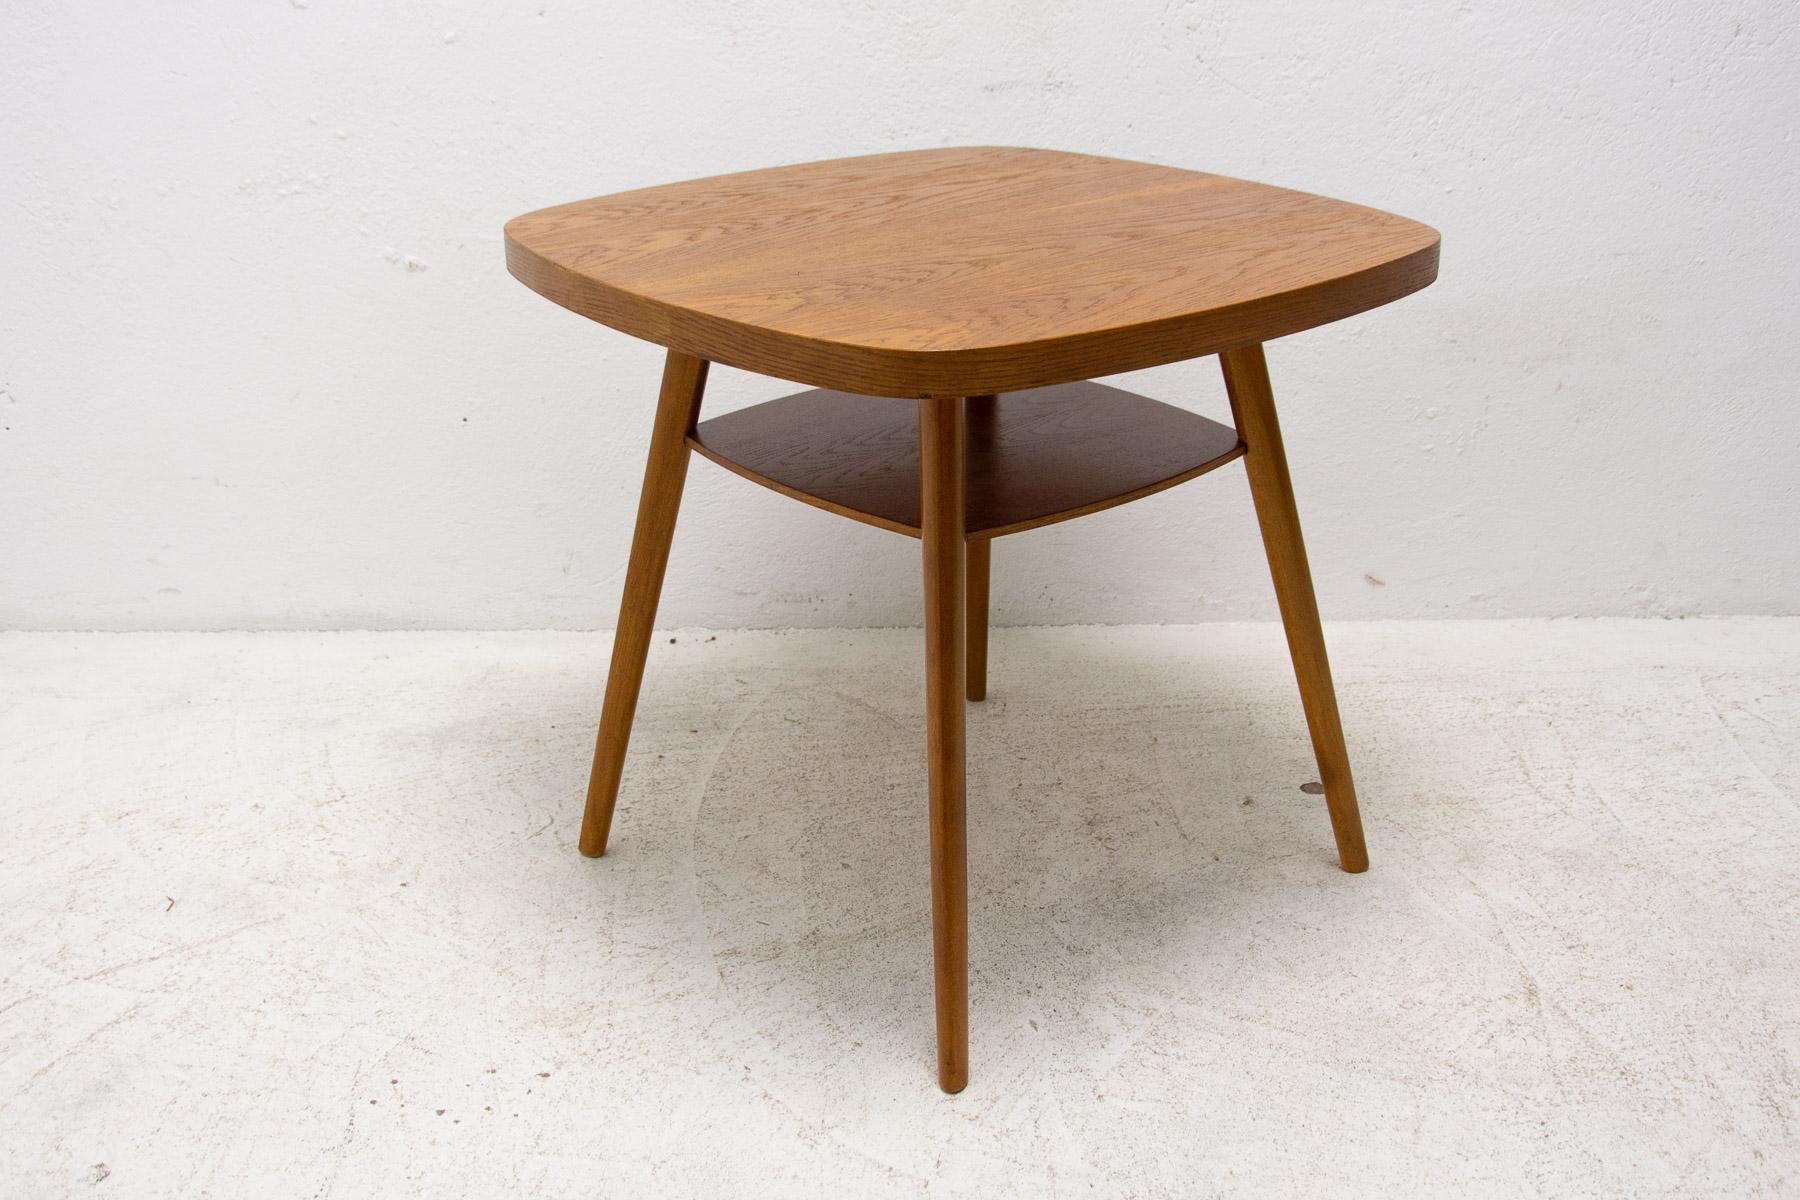 Cette table basse du milieu du siècle a été fabriquée dans l'ancienne Tchécoslovaquie dans les années 1960. Il est en bois de hêtre.

Associé à l'exposition de renommée mondiale EXPO 58 à Bruxelles. En excellent état, entièrement